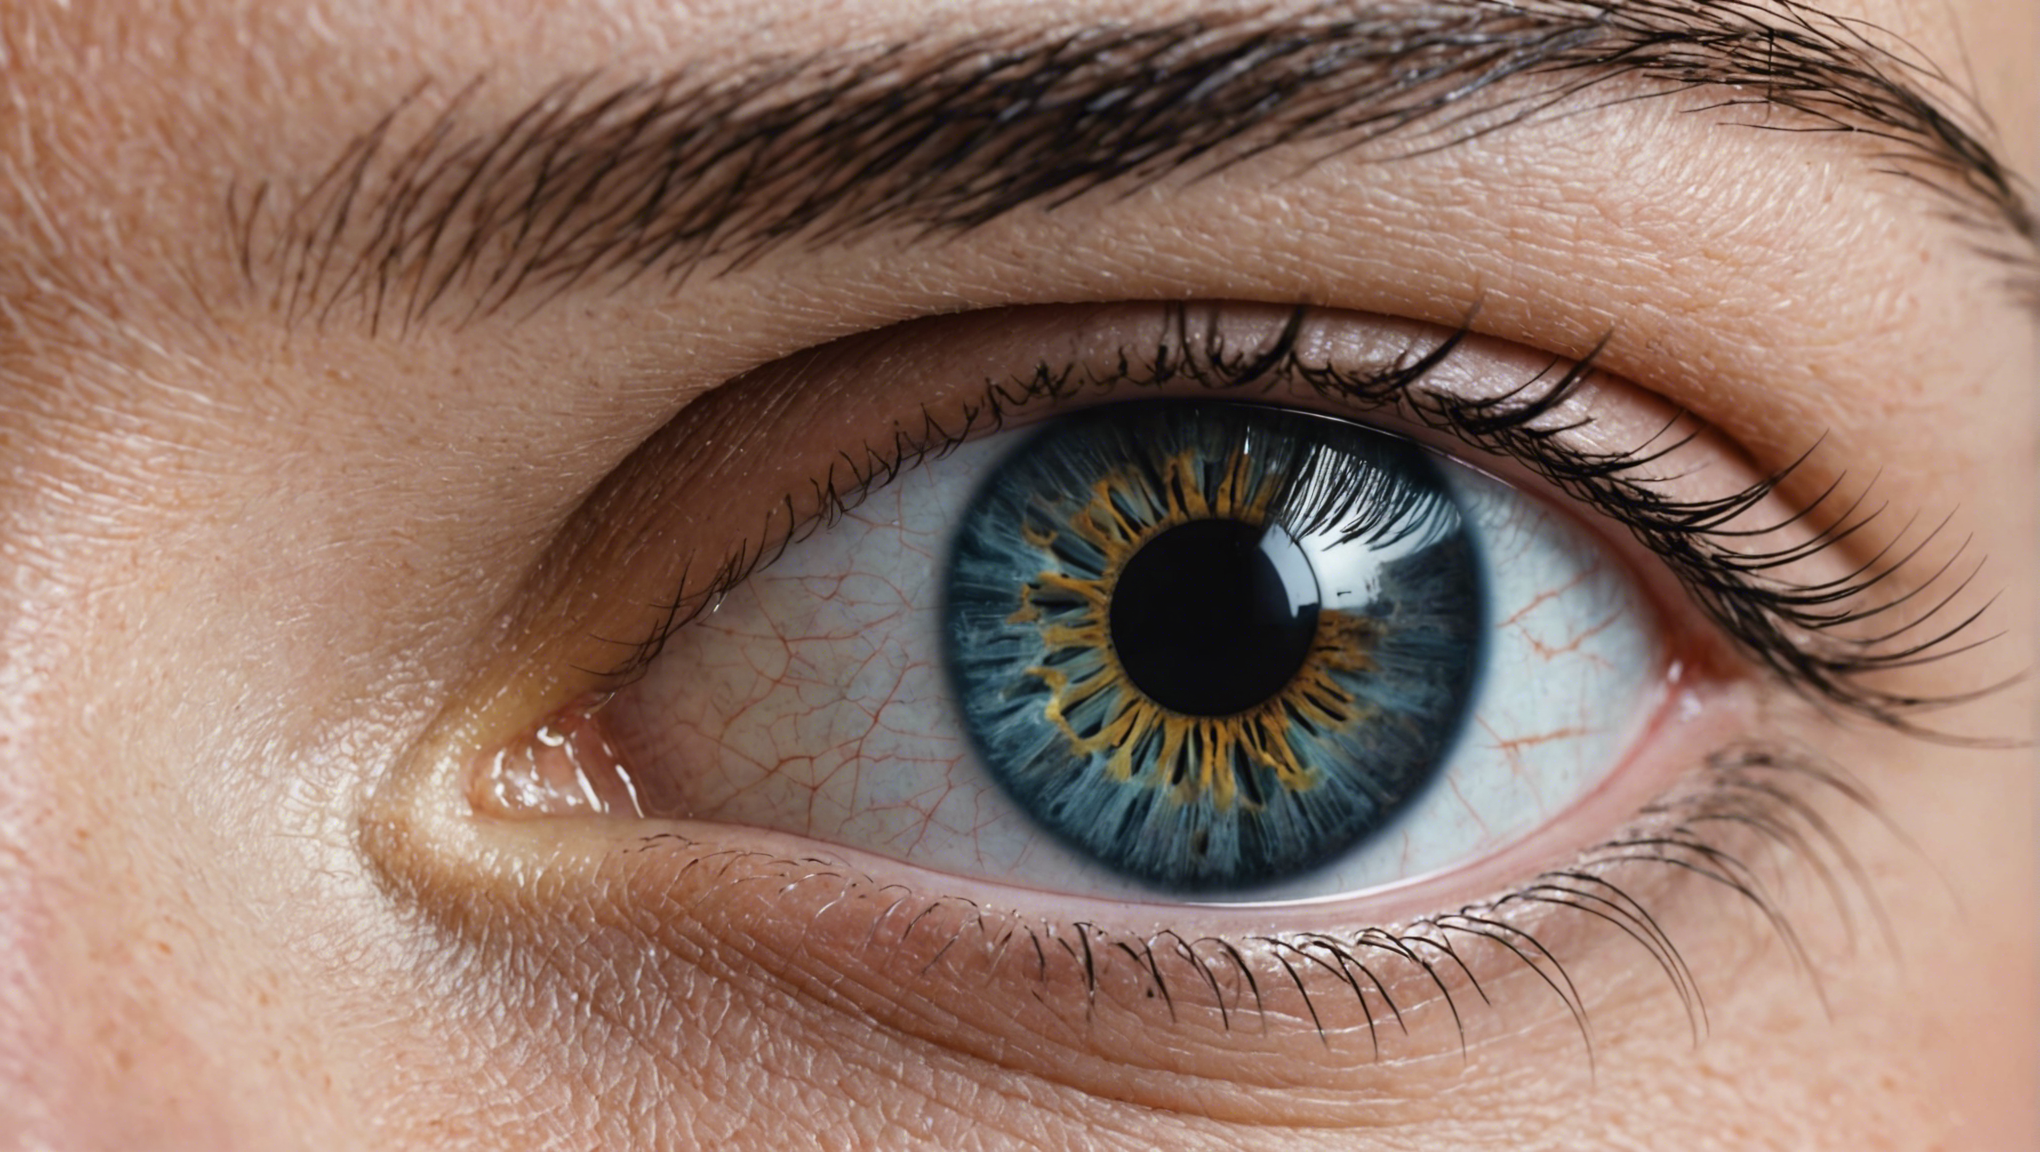 découvrez les risques et les complications potentielles liés à l'opération des yeux, et comment les gérer efficacement pour un rétablissement en toute sécurité.